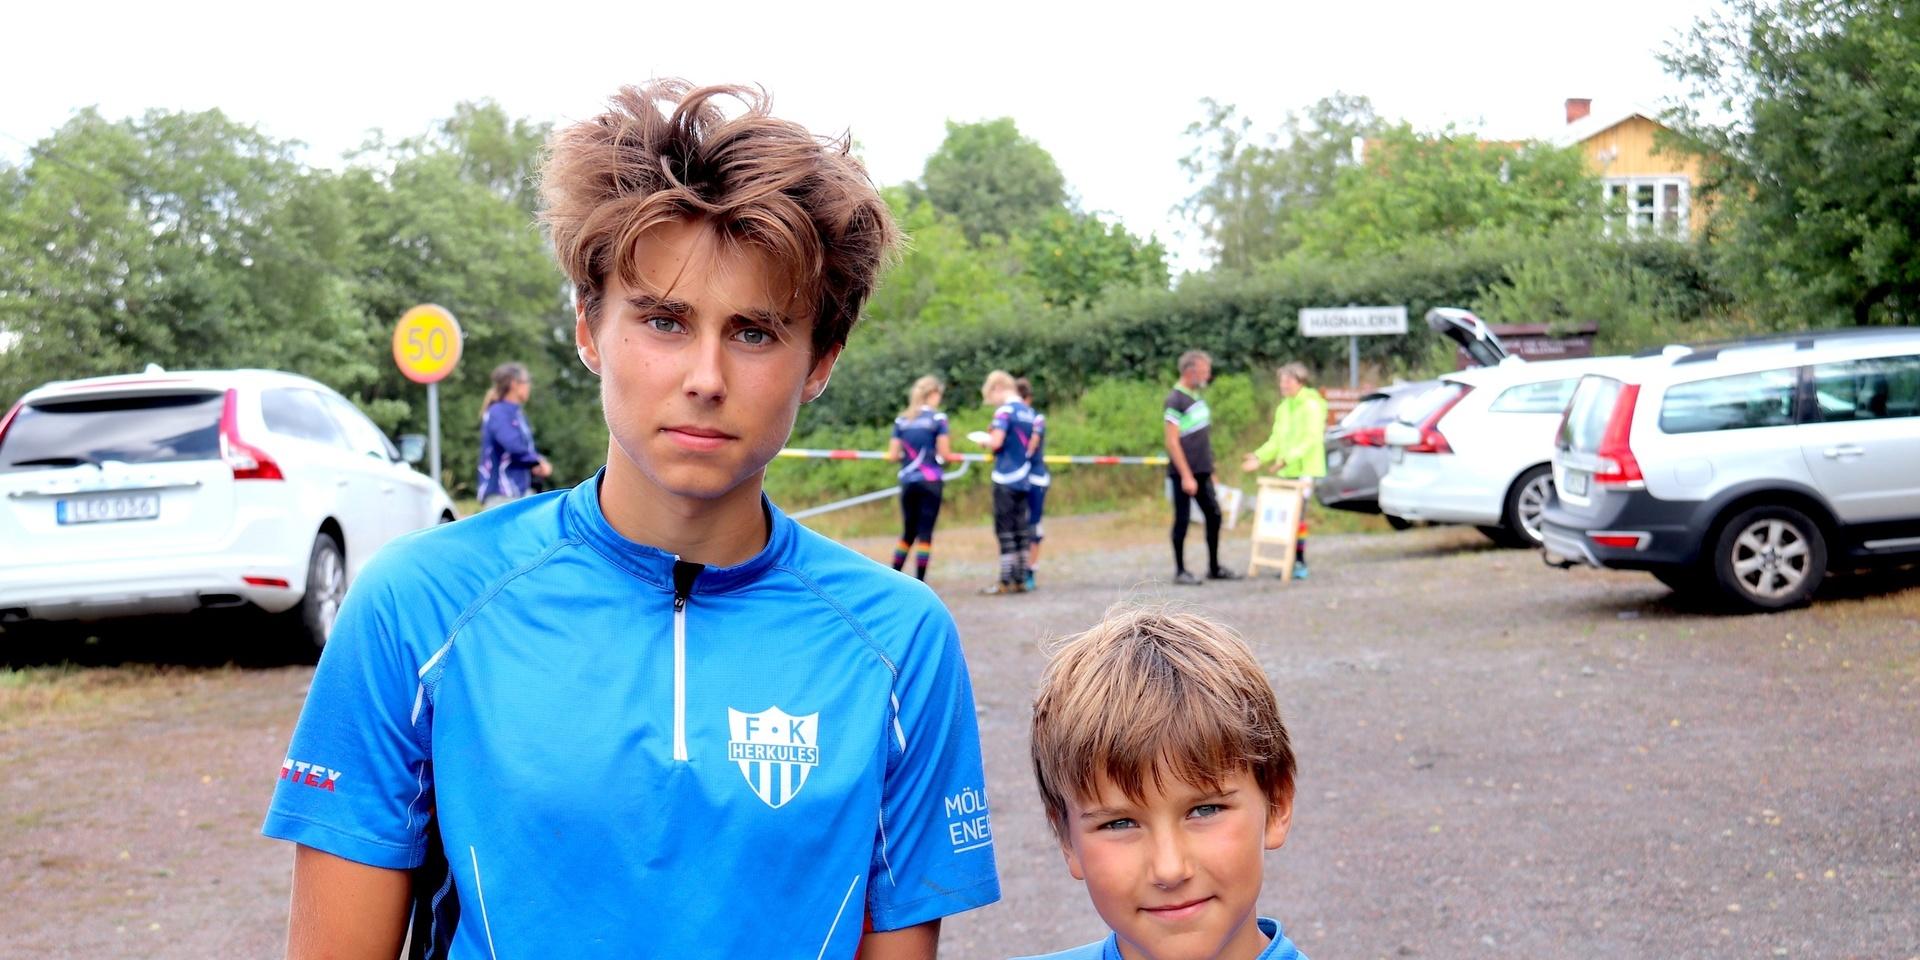 Hannes Persson, 16 år, och lillebror Axel Persson, 9 år, sprang båda i Hällesåker.